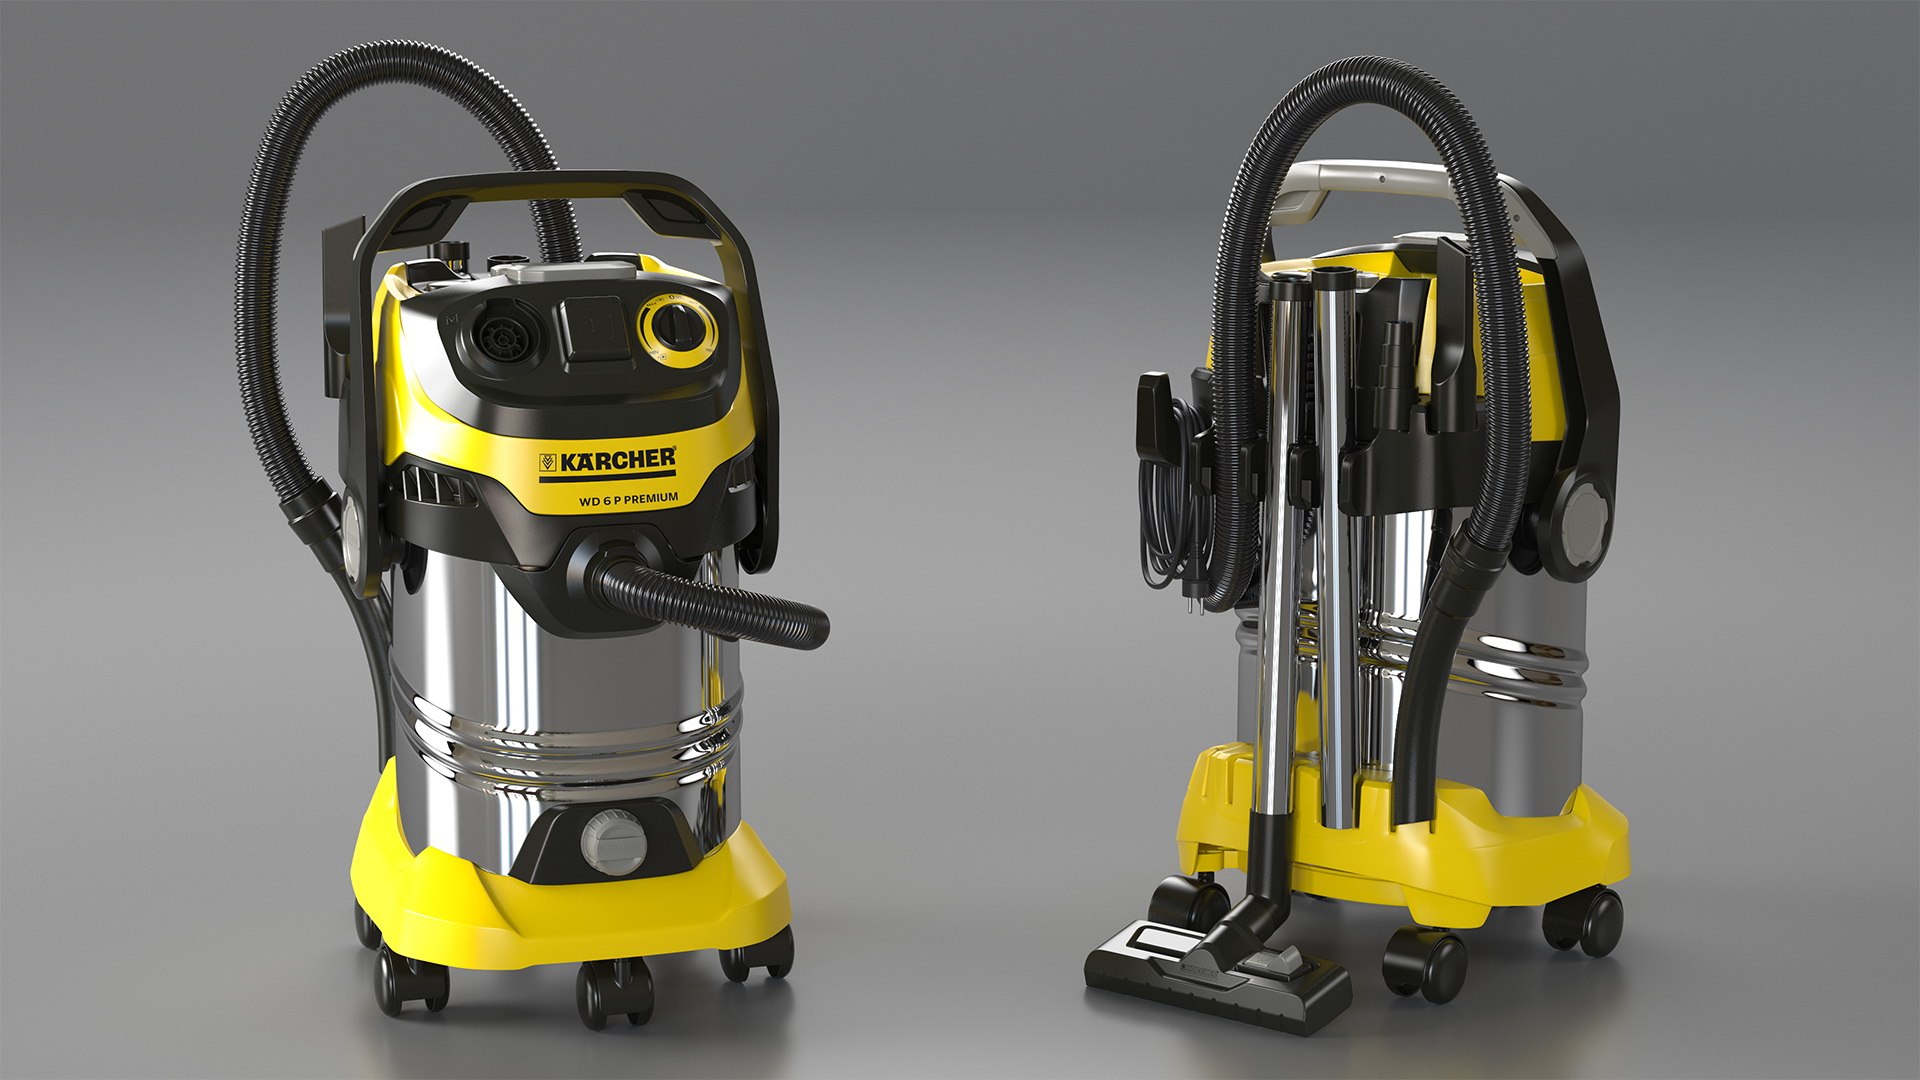 Karcher wd6 multi-purpose vacuum cleaner 3D - TurboSquid 1469291